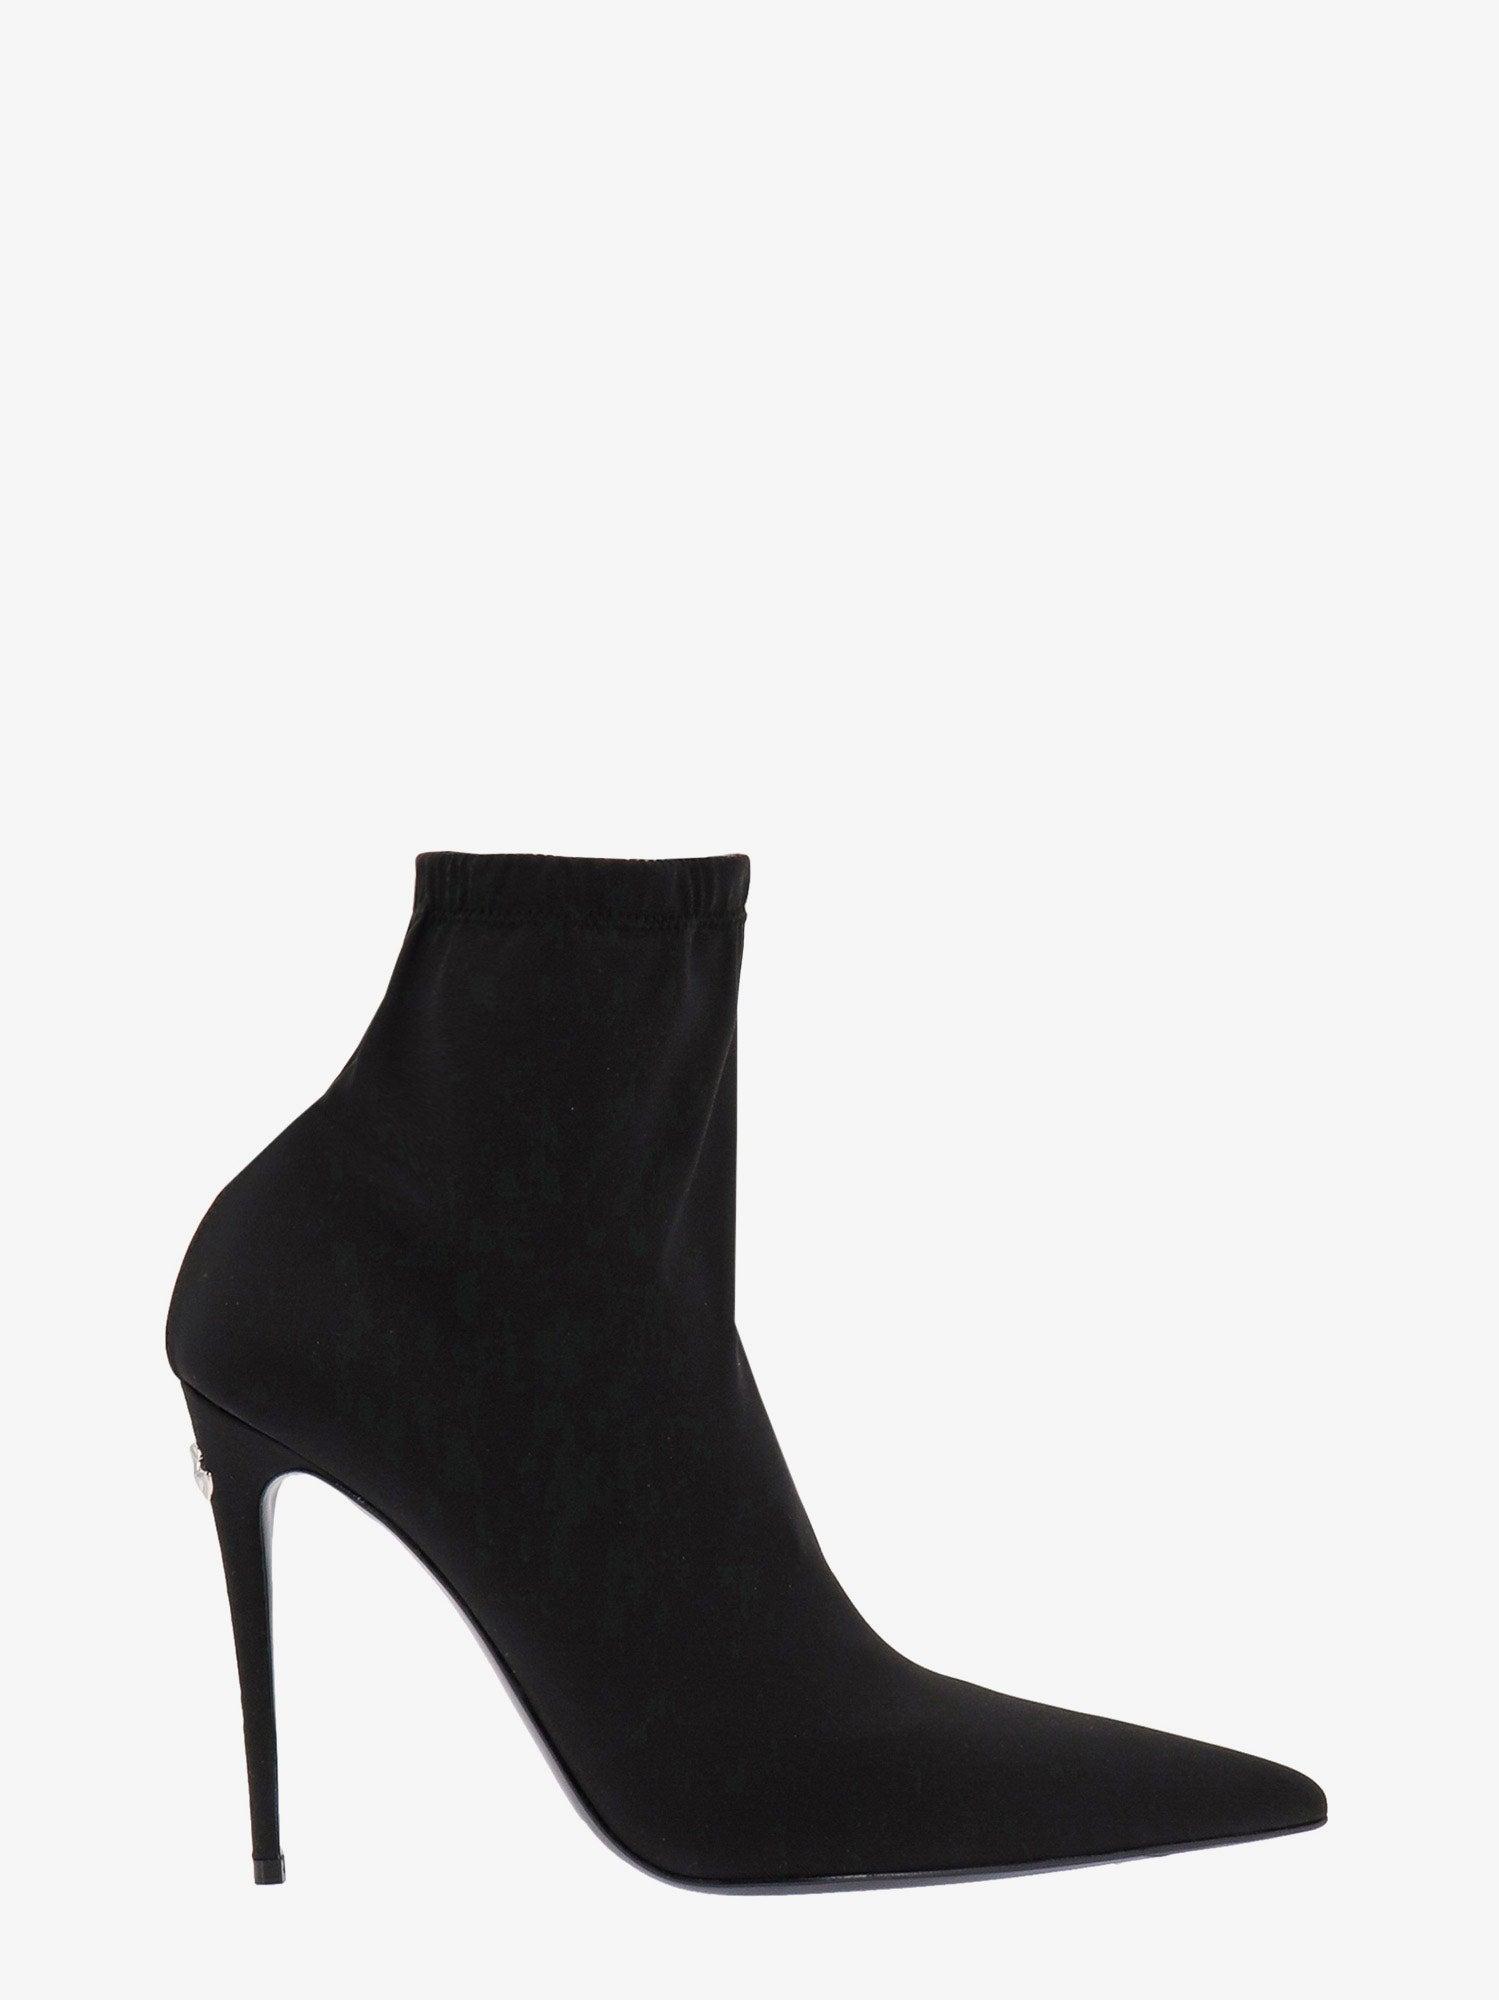 Dolce & Gabbana Stiletto Heel Boots in Black | Lyst